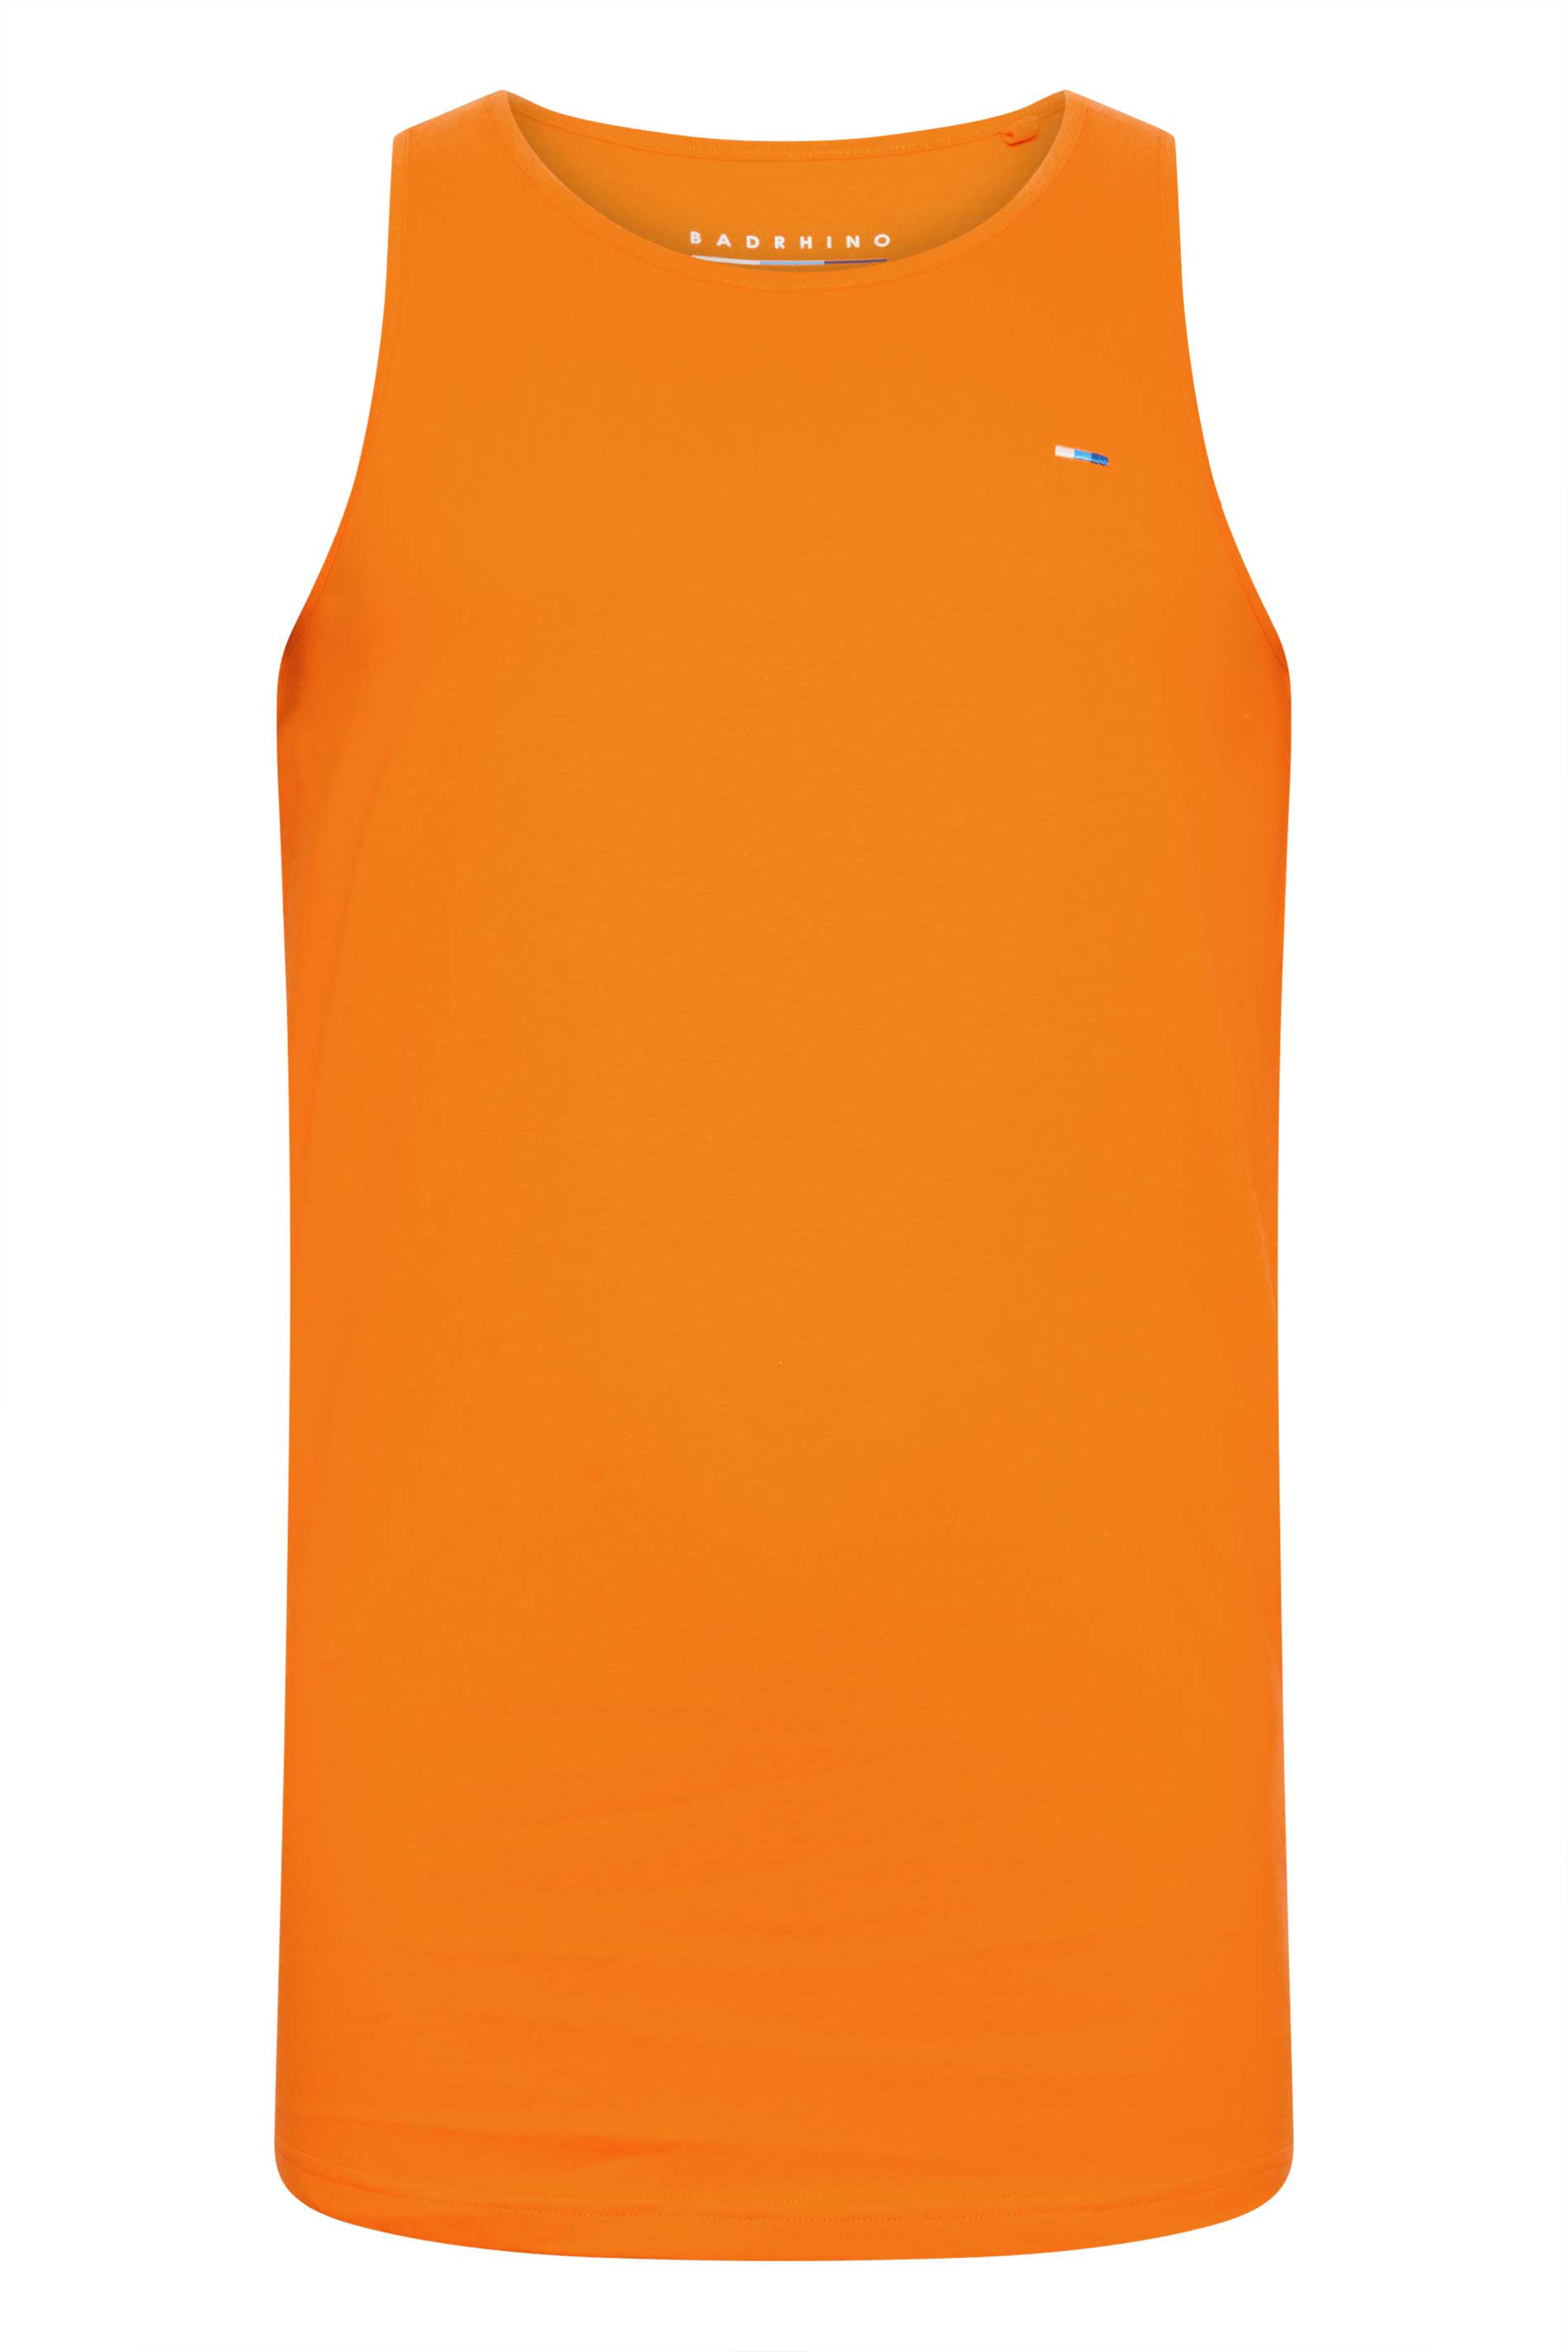 BadRhino Big & Tall Sun Orange Vest | BadRhino 2